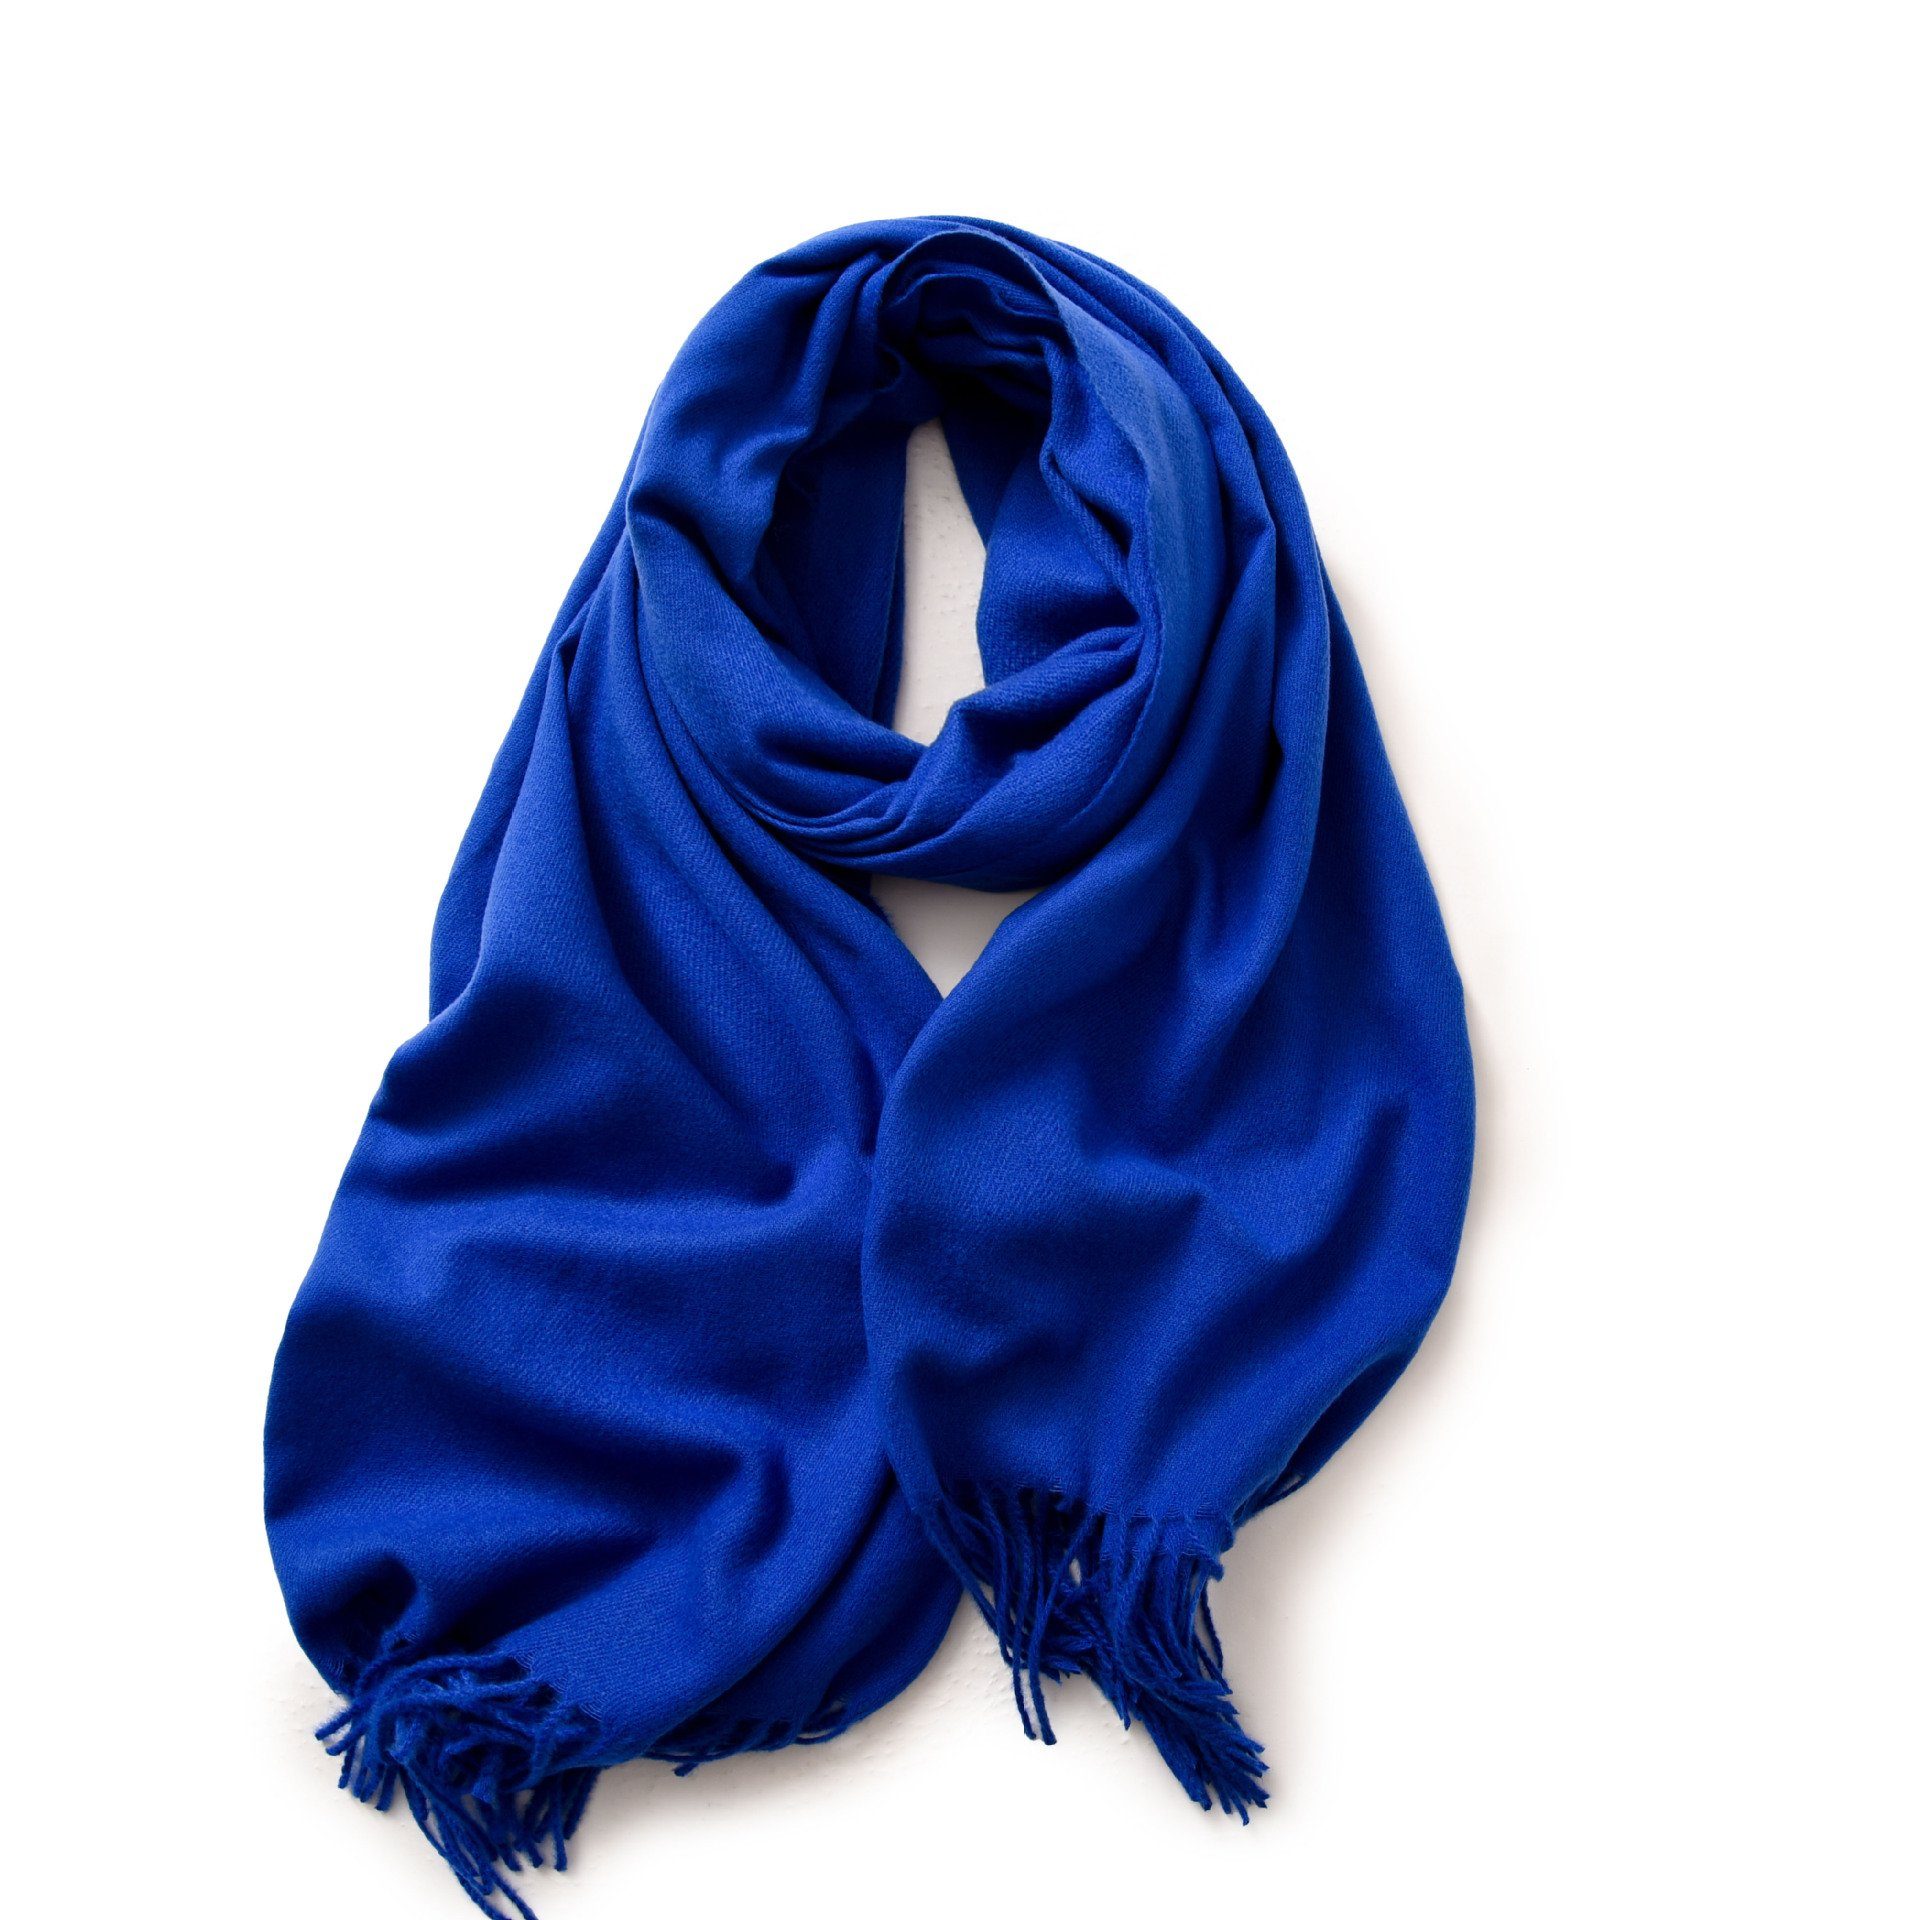 XDeer Modeschal Damen Schal,kuschelweich,Winter Schal Poncho Qualität,Neuer Stil, Damen Halstuch Geschenk für Frauen in verschiedenen Farben blue01